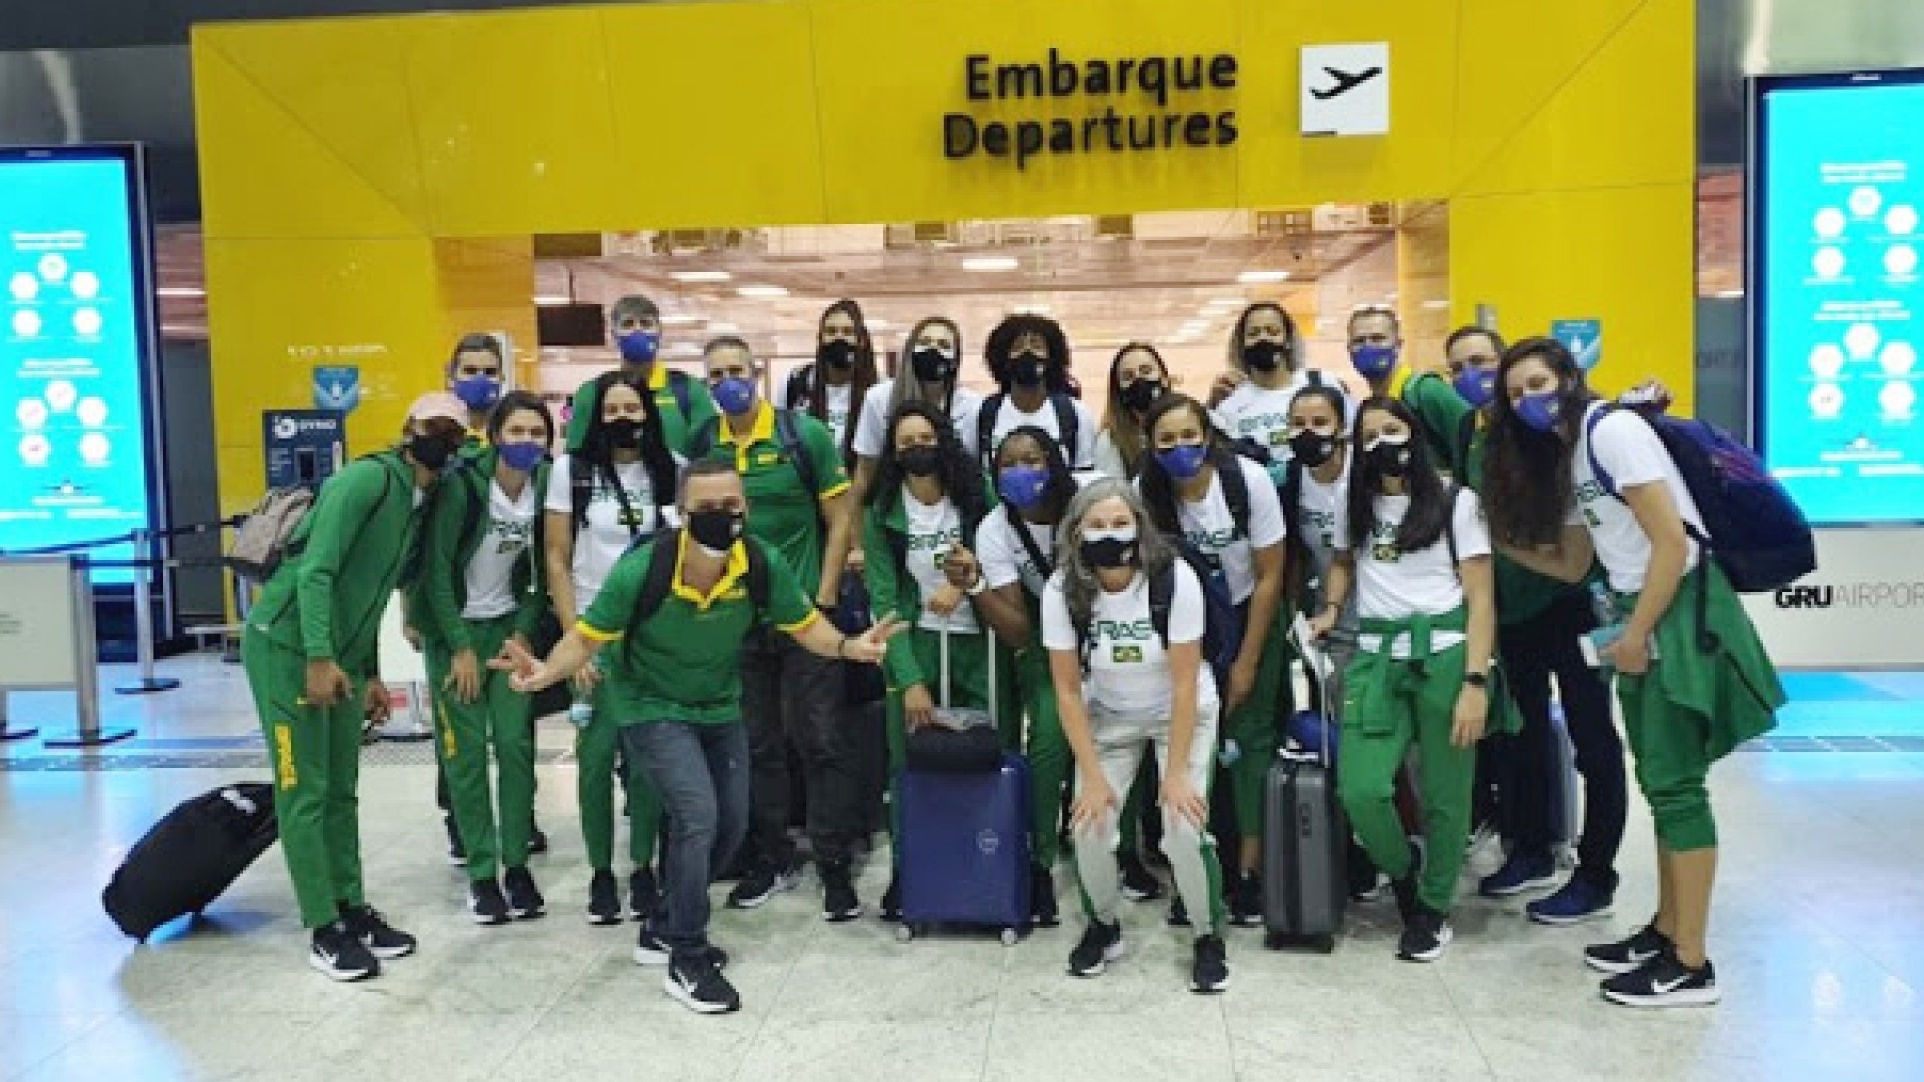 Seleção Brasileira Feminina joga nesta quarta em Araraquara - Portal Morada  - Notícias de Araraquara e Região